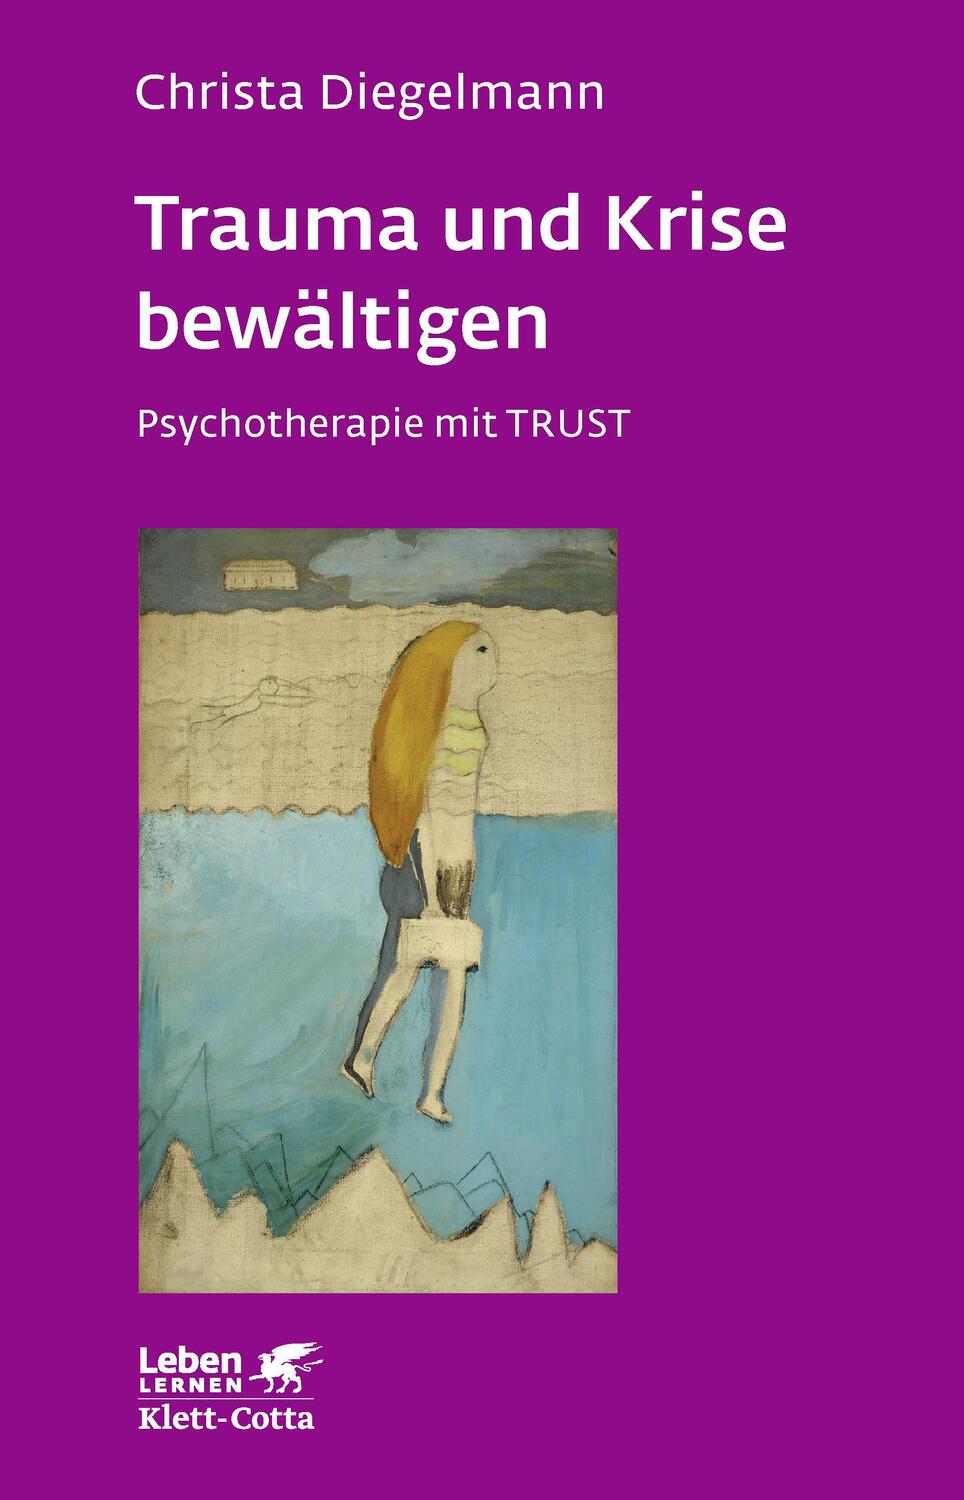 Trauma und Krise bewältigen. Psychotherapie mit Trust (Trauma und Krise bewältigen. Psychotherapie mit Trust, Bd. ?) - Diegelmann, Christa